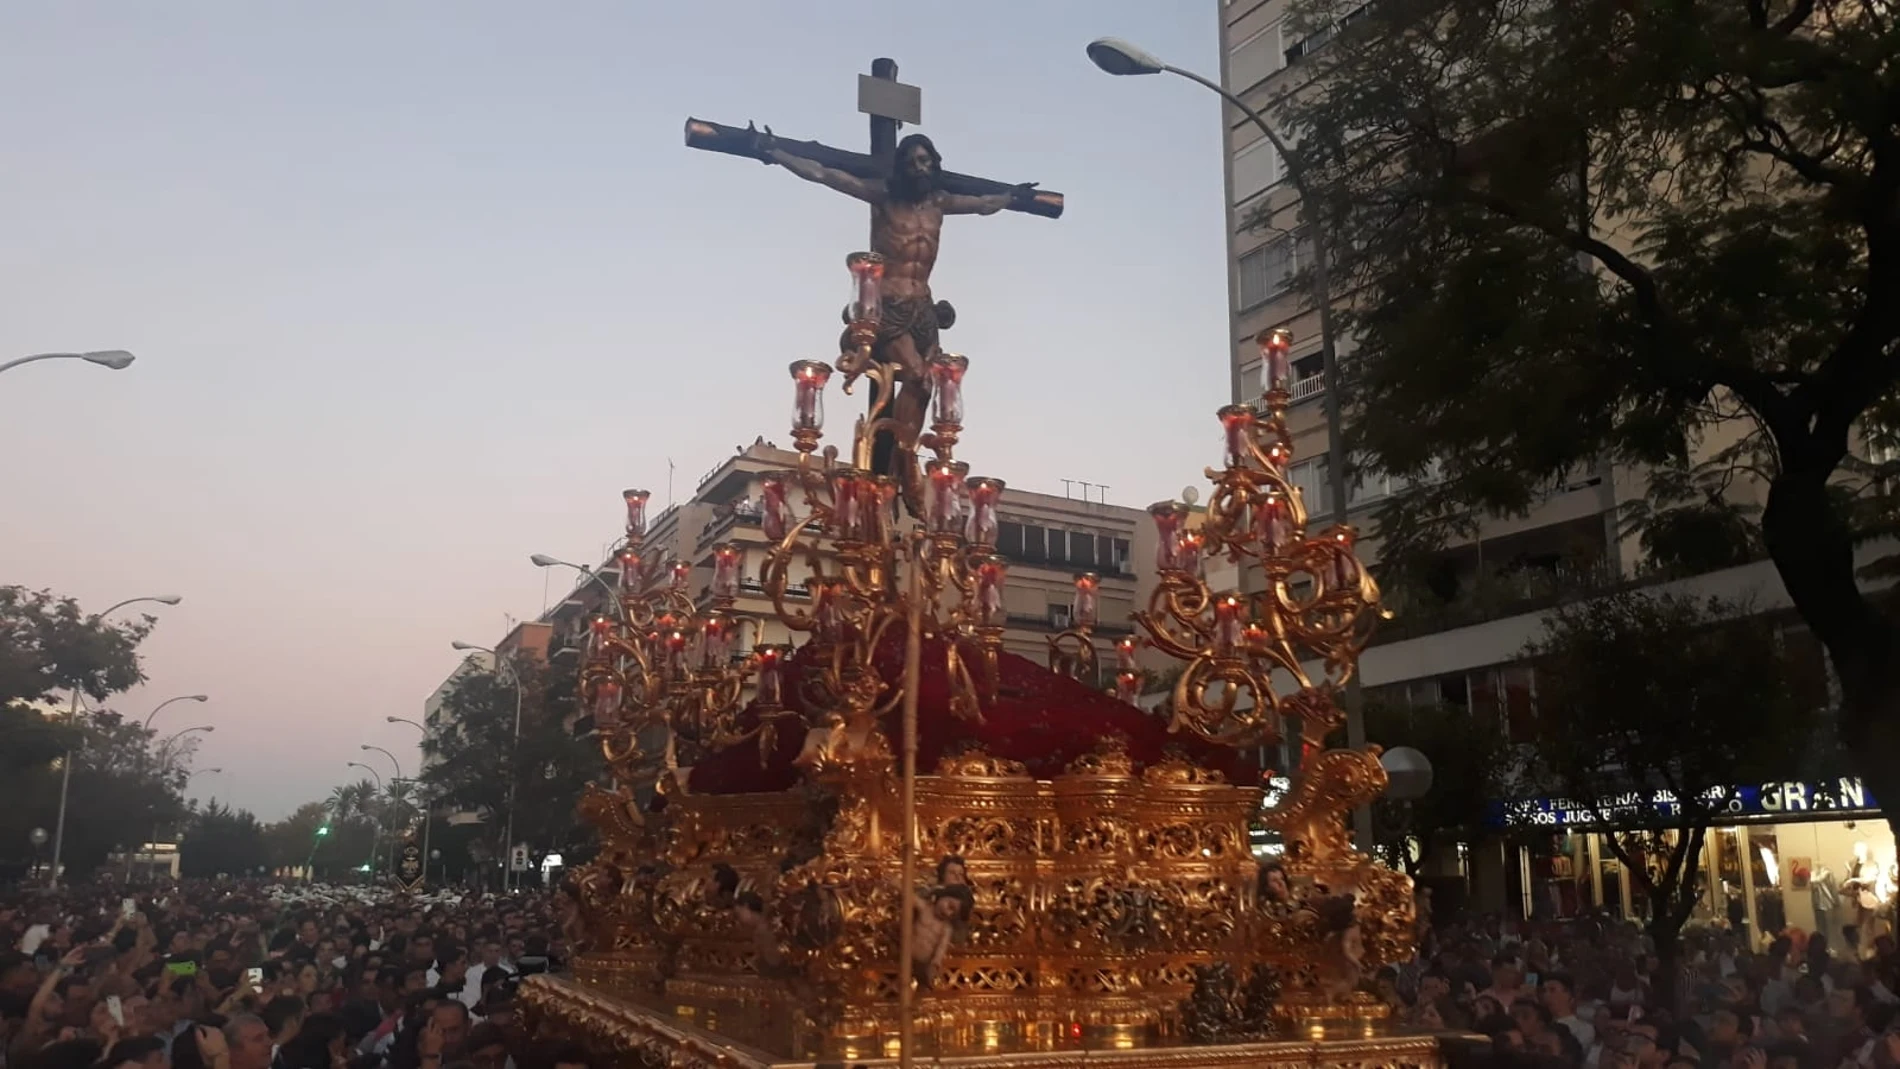 El Cristo de la Sed recorriendo el barrio de Nervión, en Sevilla, con motivo del 50 aniversario de la fundación de su hermandad